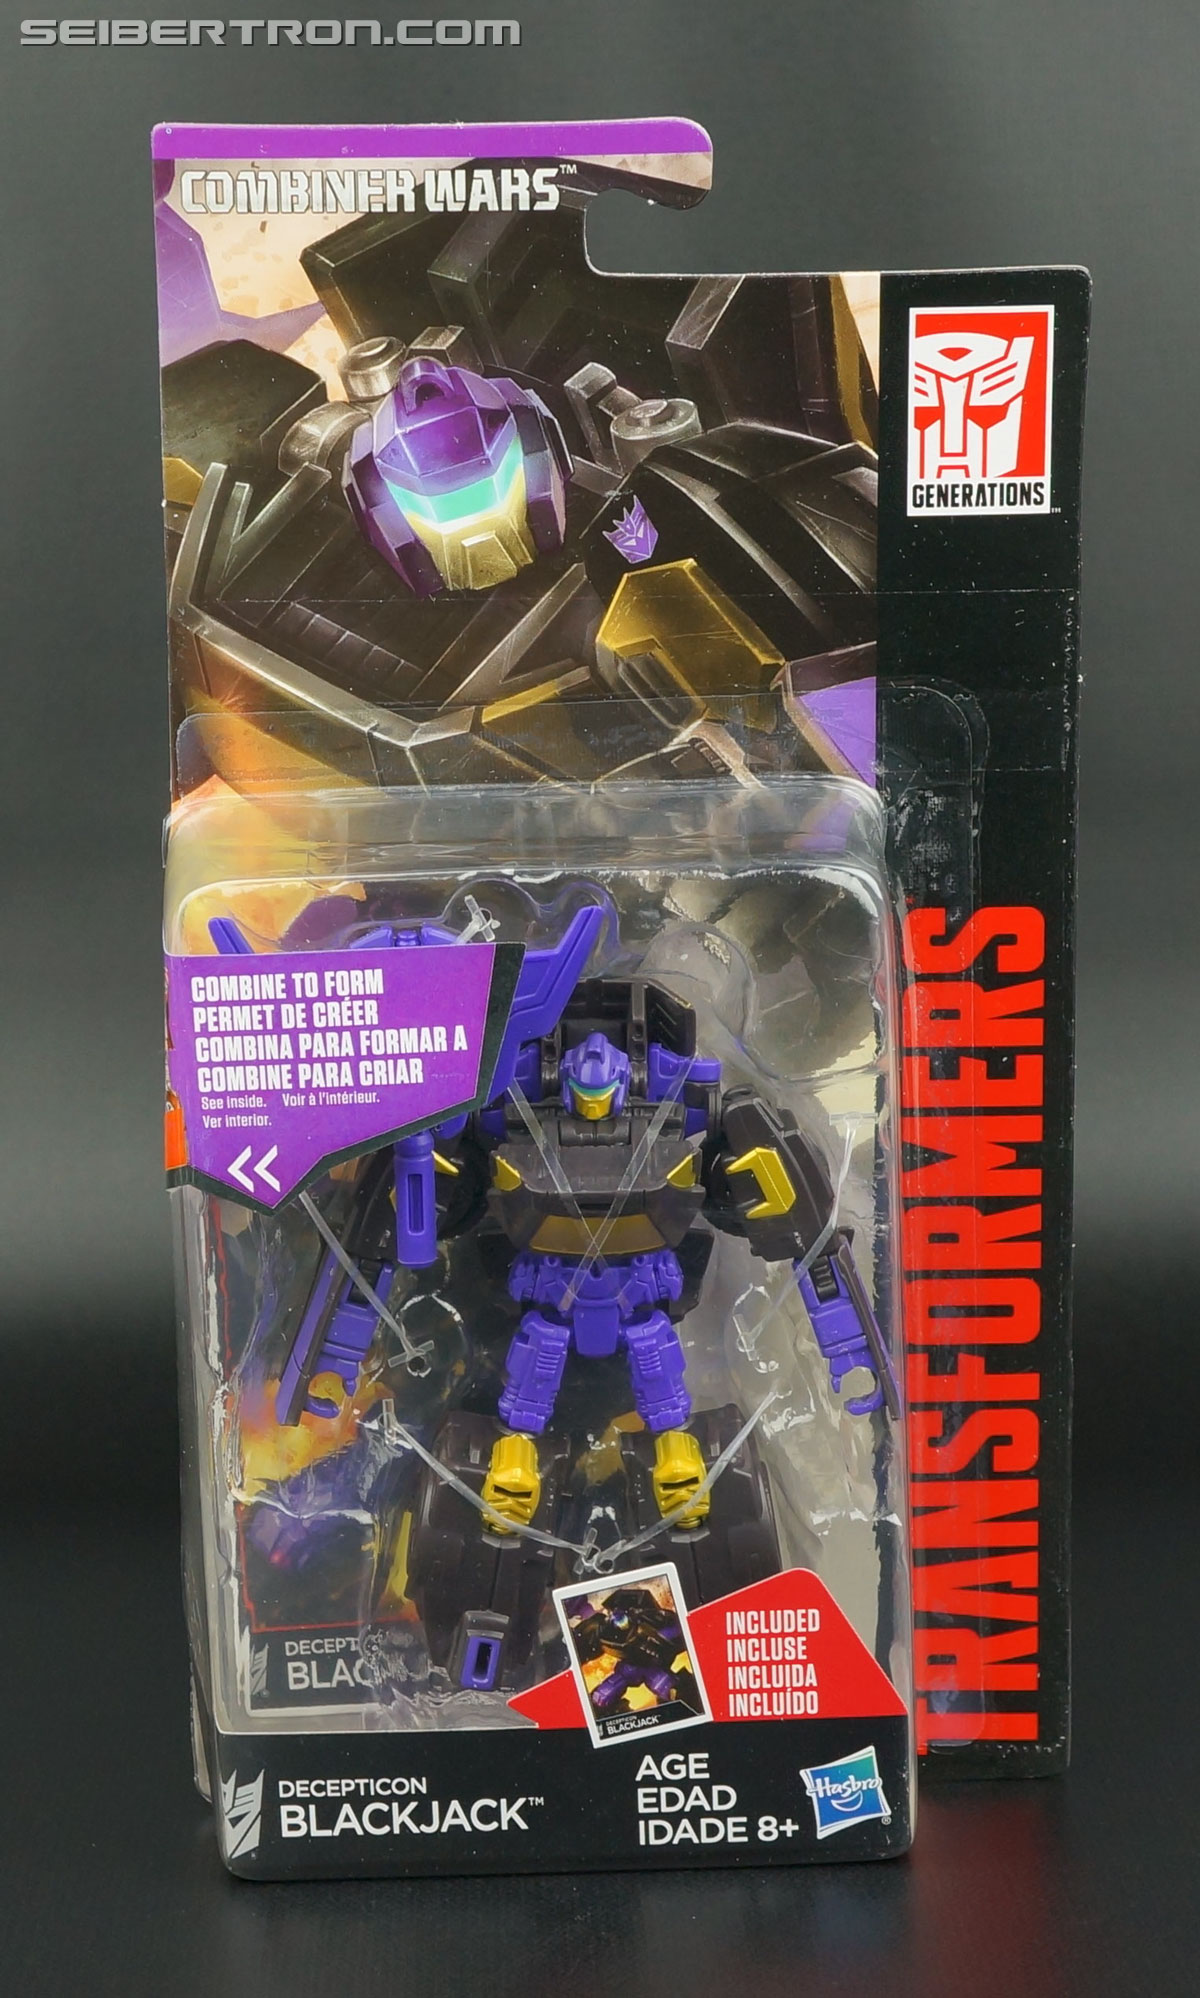 Transformers Generations Combiner Wars Legends Class Blackjack Action Figure Toy 